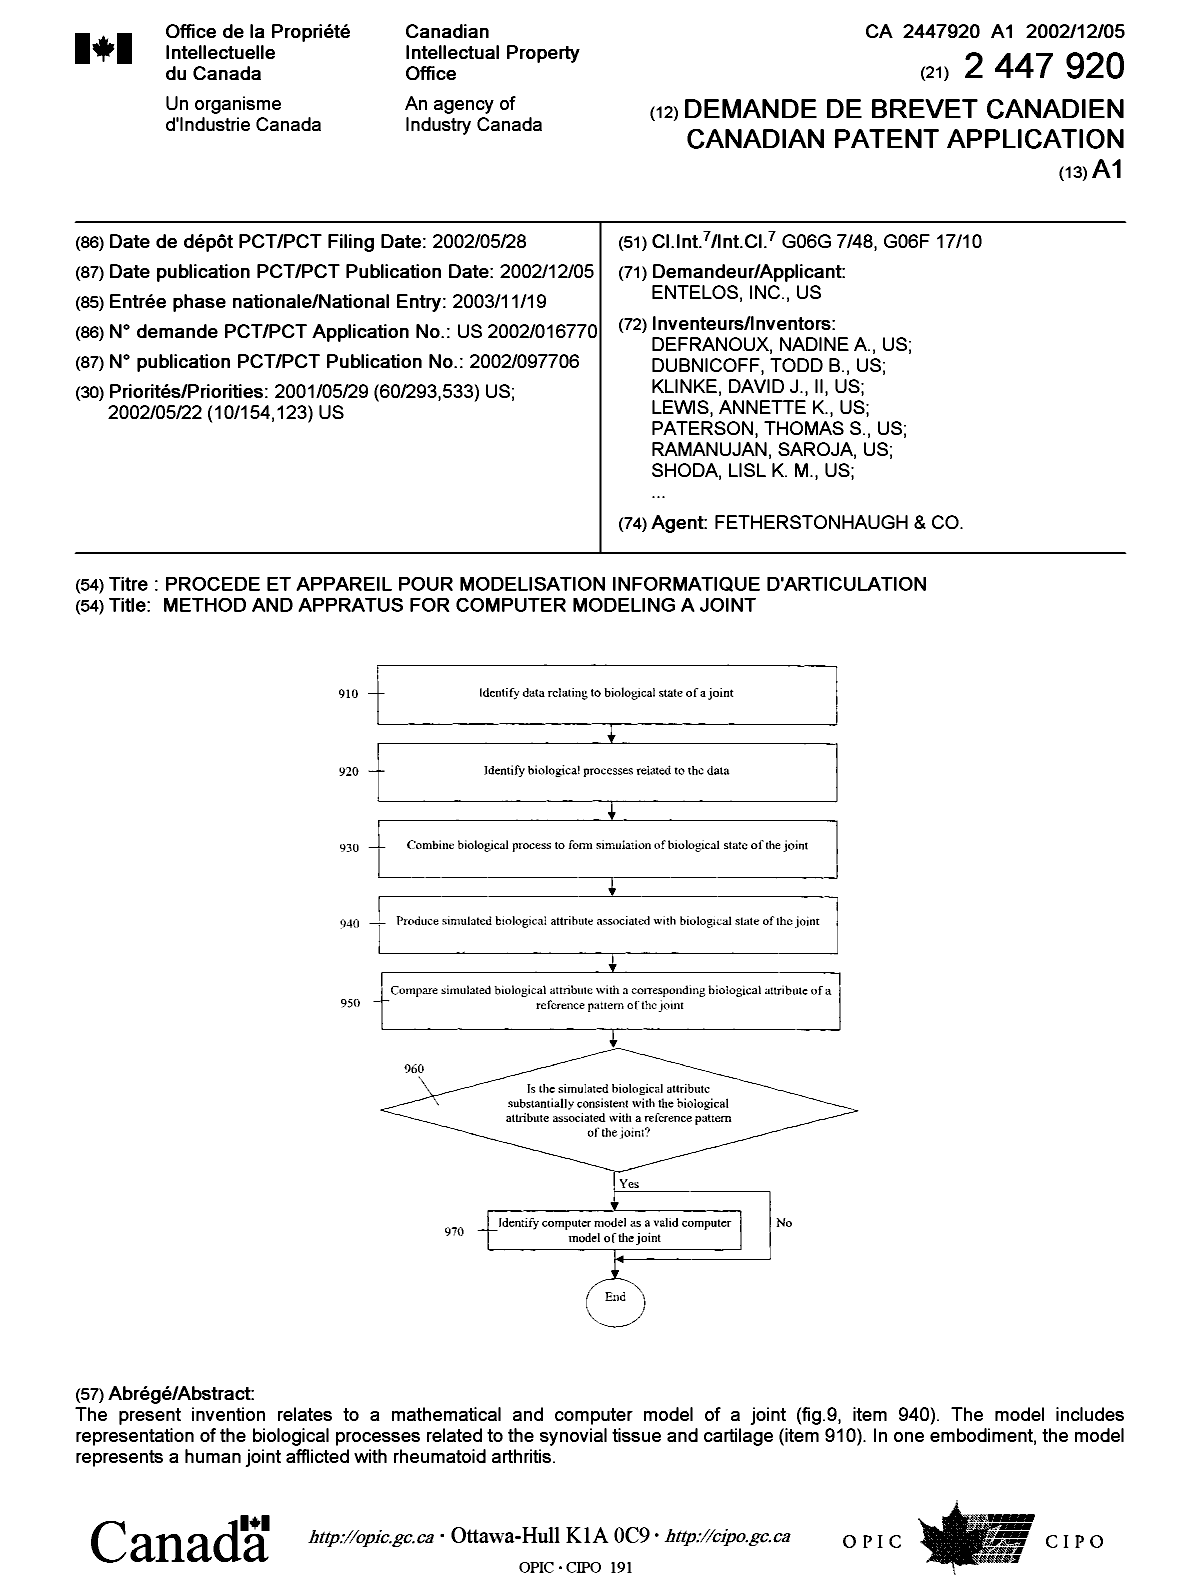 Document de brevet canadien 2447920. Page couverture 20040202. Image 1 de 2